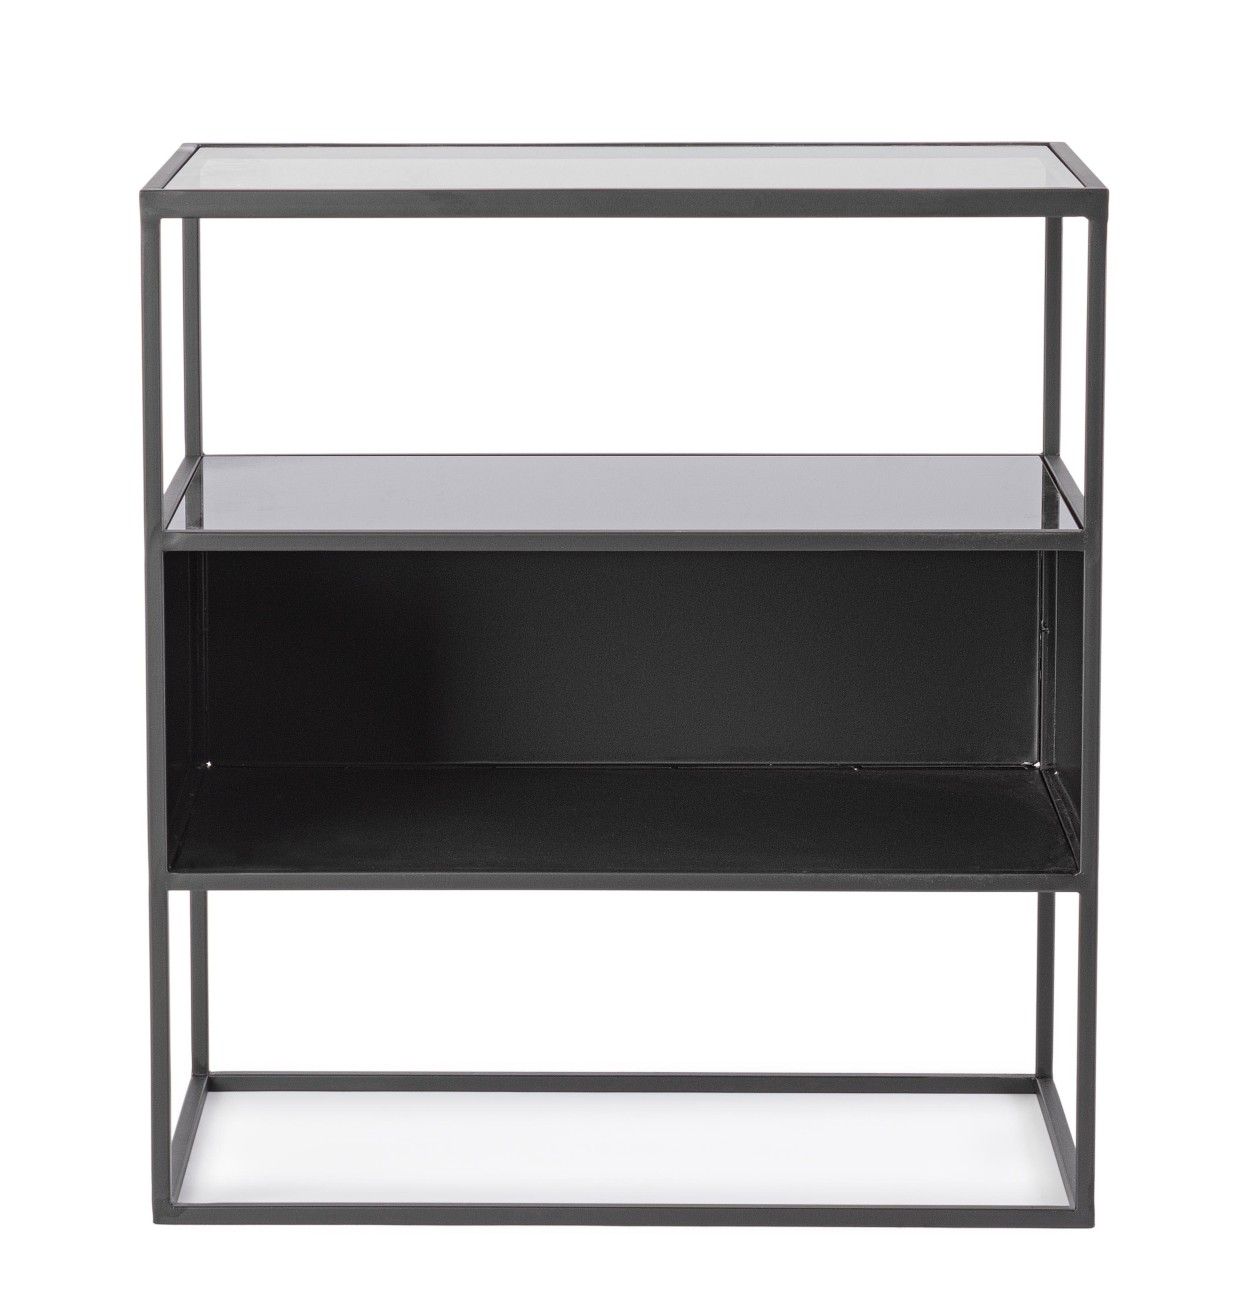 Der Nachttisch Hydra überzeugt mit seinem modernen Design. Gefertigt wurde er aus Metall, welches einen schwarzen Farbton besitzt. Die Tischplatte ist aus Glas. Der Nachttisch besitzt eine Breite von 50 cm.